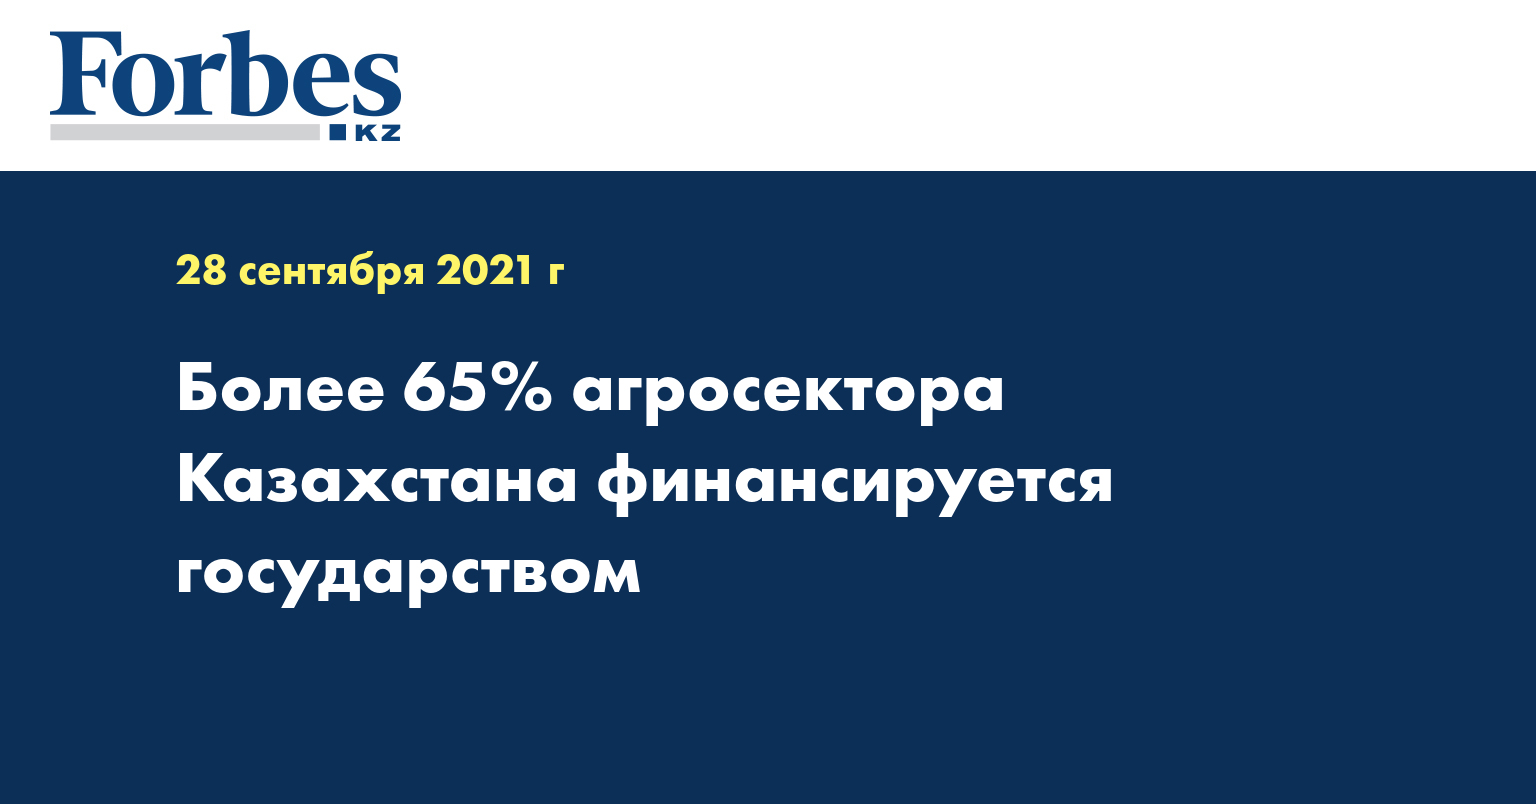 Более 65% агросектора Казахстана финансируется государством